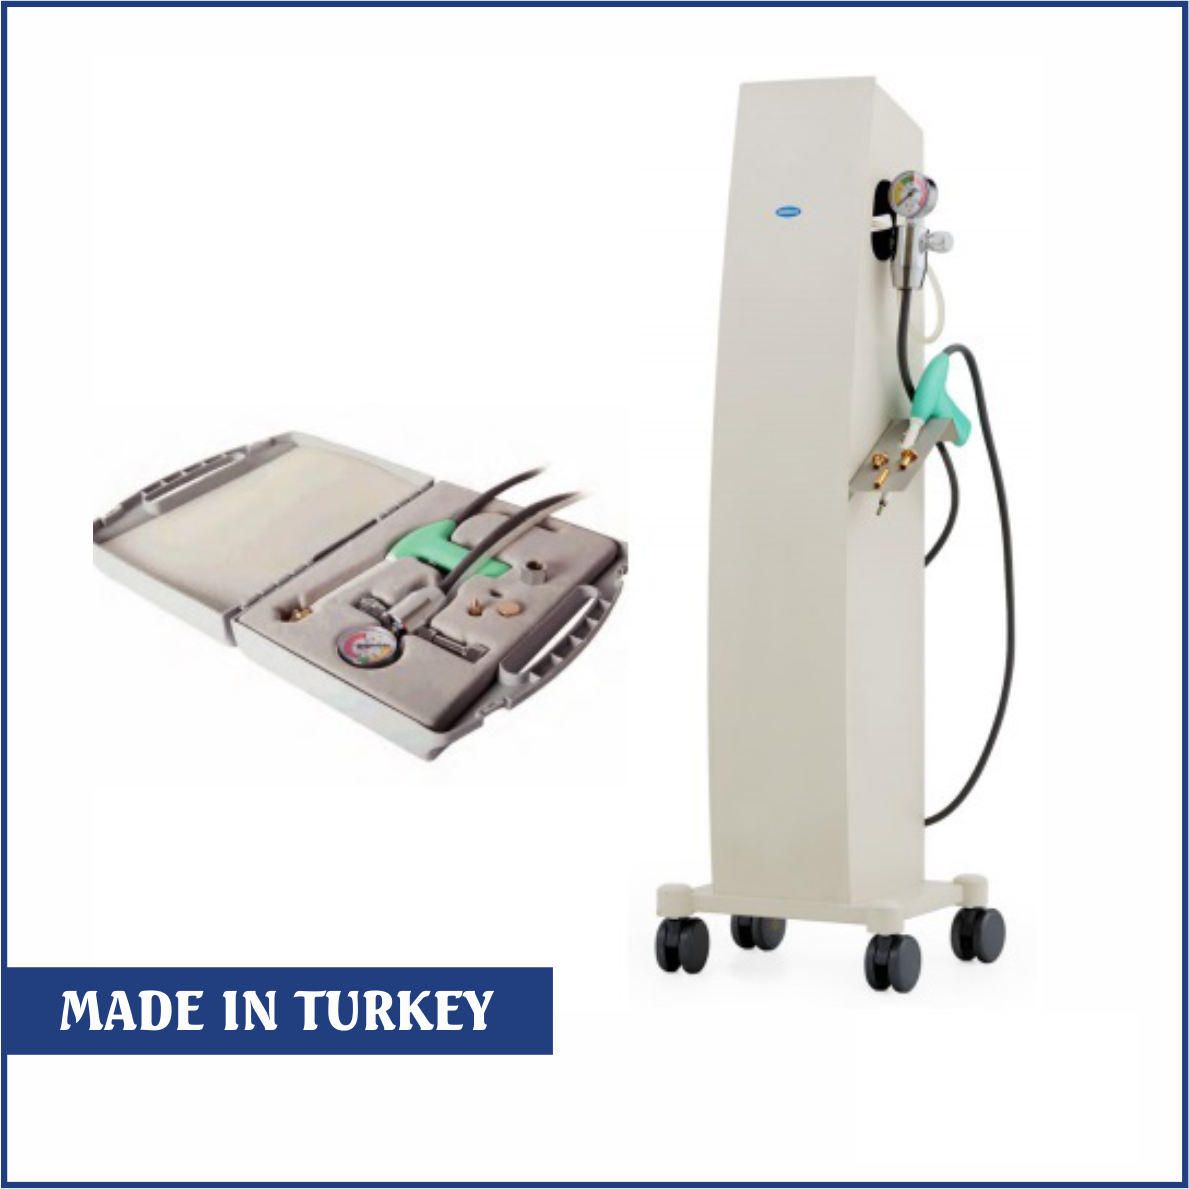 Máy áp lạnh cổ tử cung giá rẻ - Model: KRY-10 - Hãng: Uzumcu - Thổ Nhĩ Kỳ